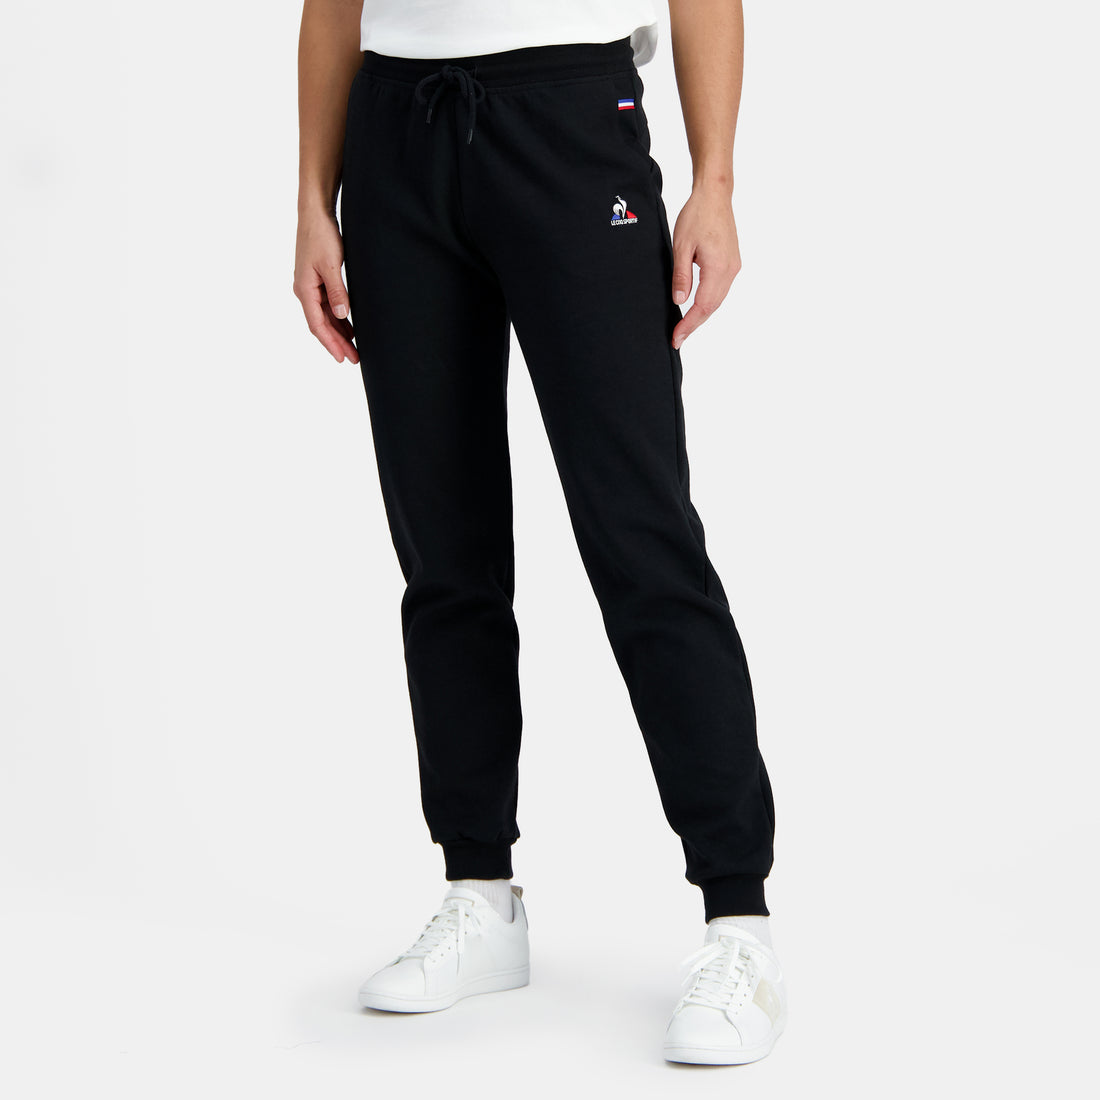 2410173-ESS Pant Regular N°1 W black  | Trousers Regular for women